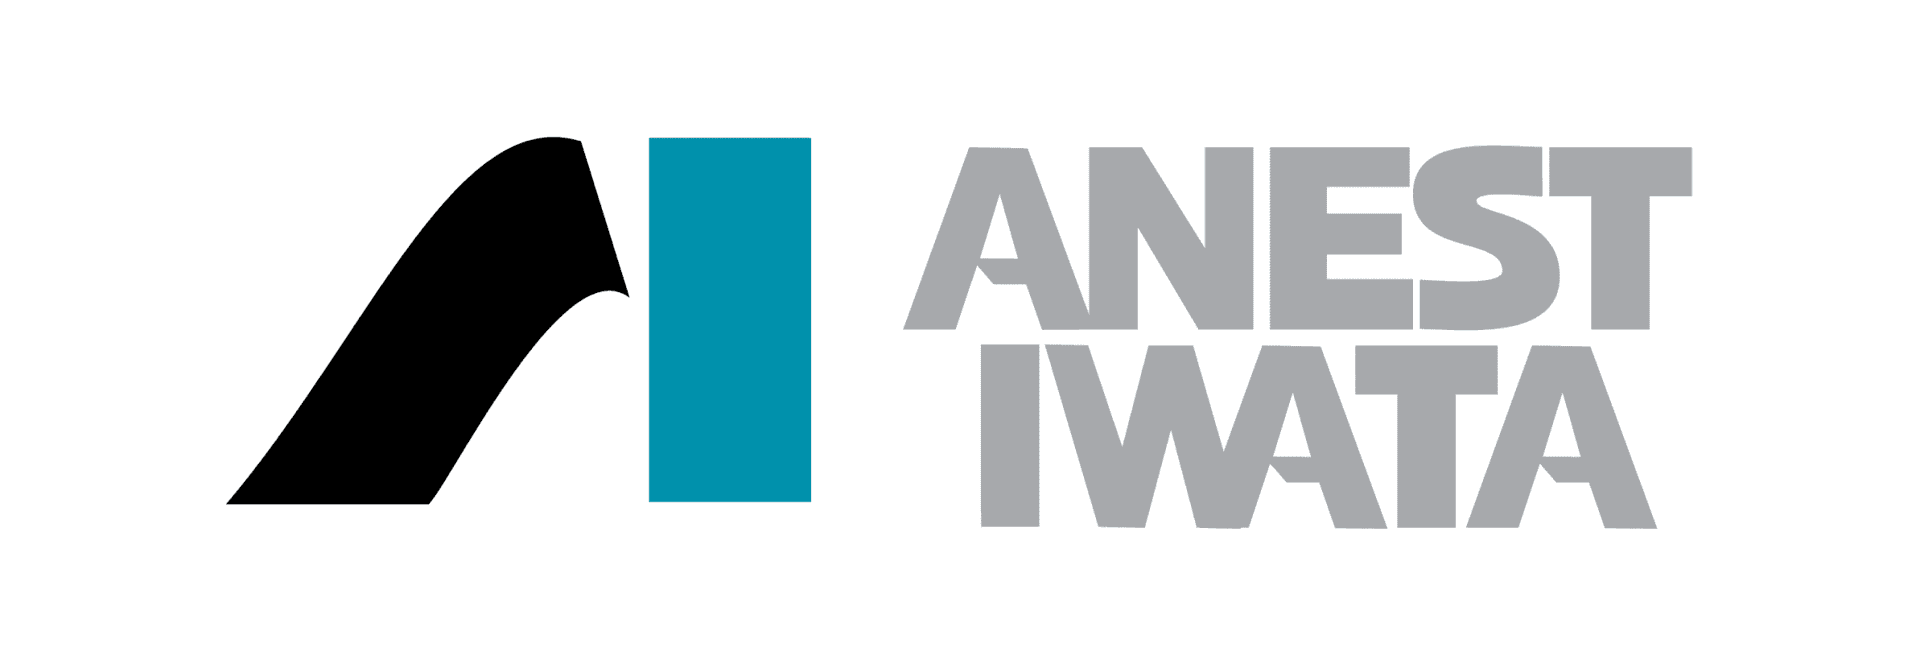 anest iwata